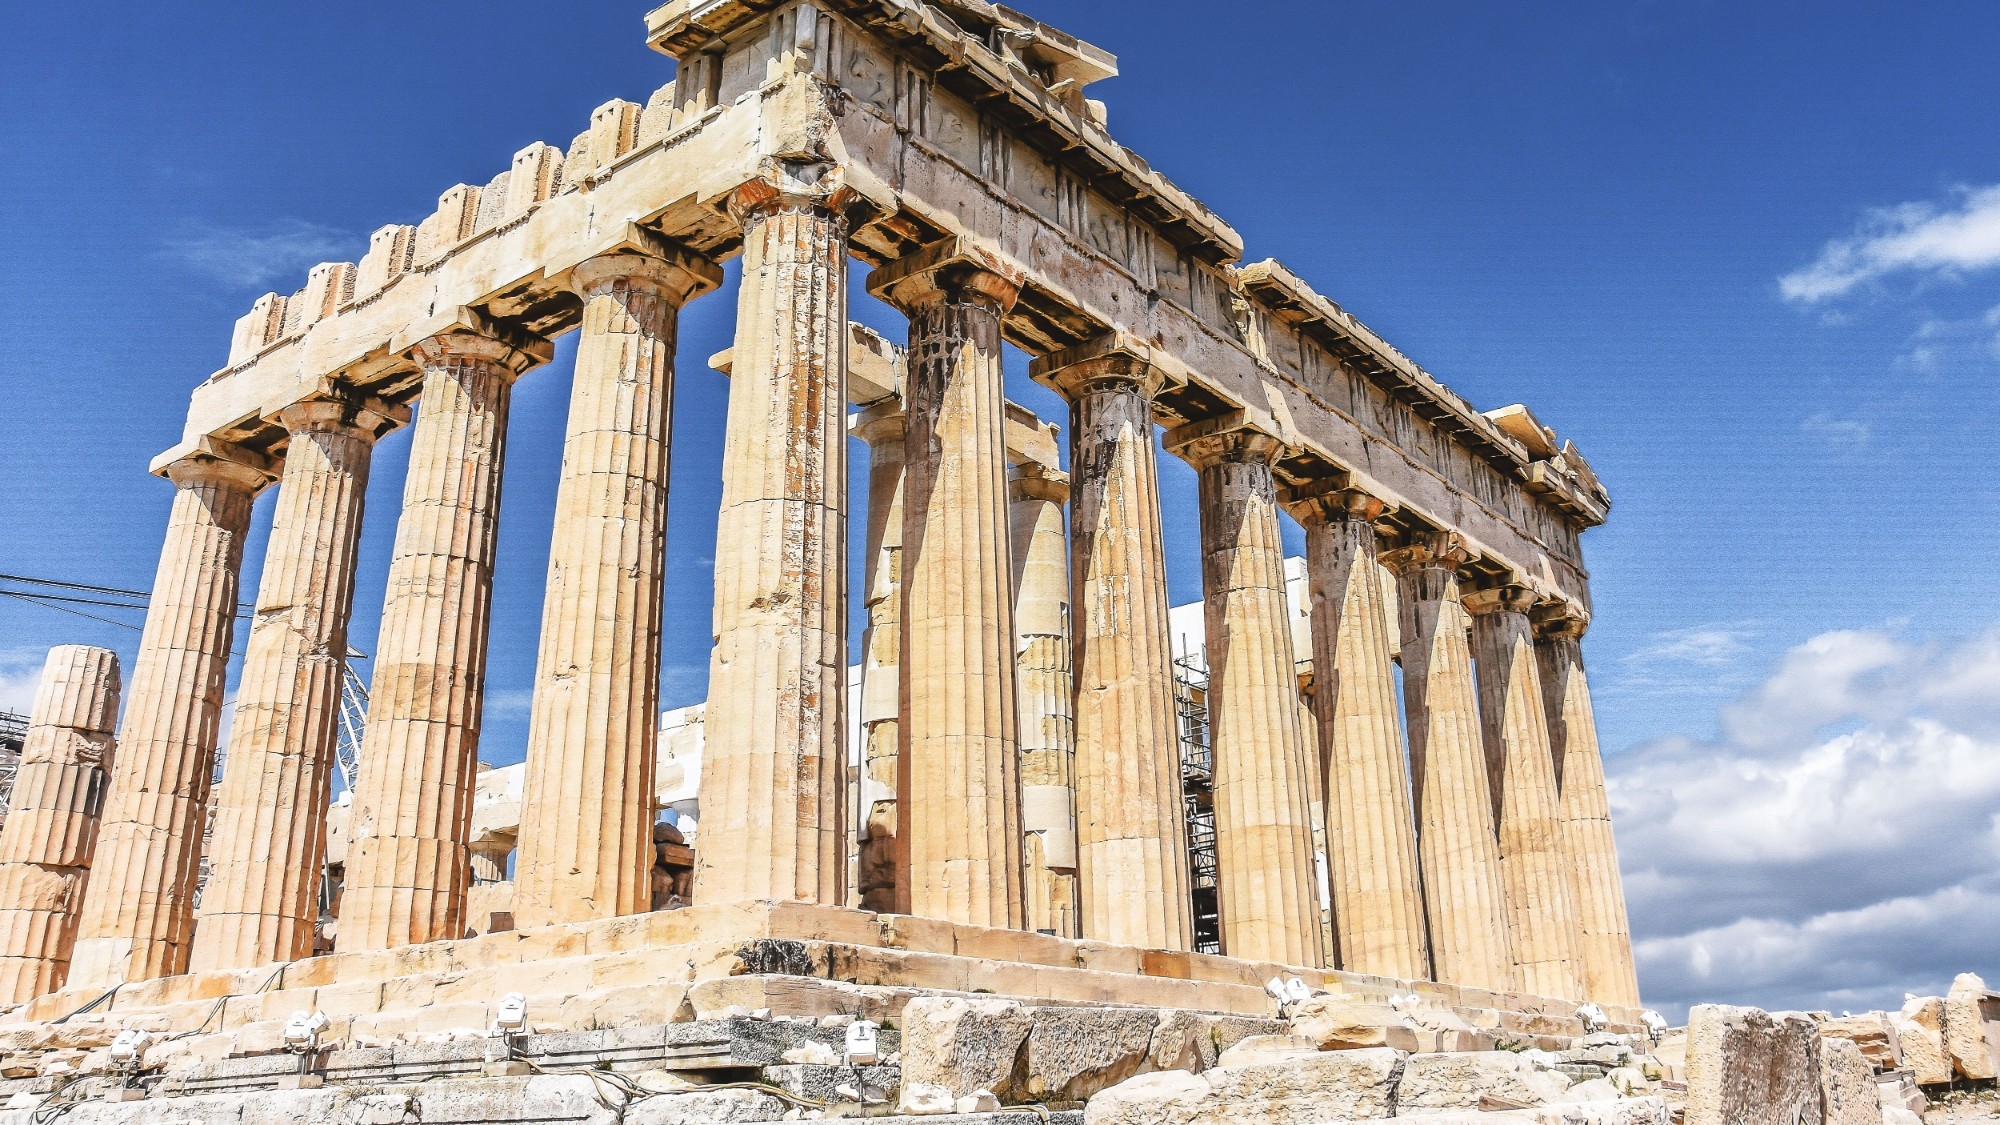 Free Parthenon, Athens, Greece photo, public domain travel CC0 image.